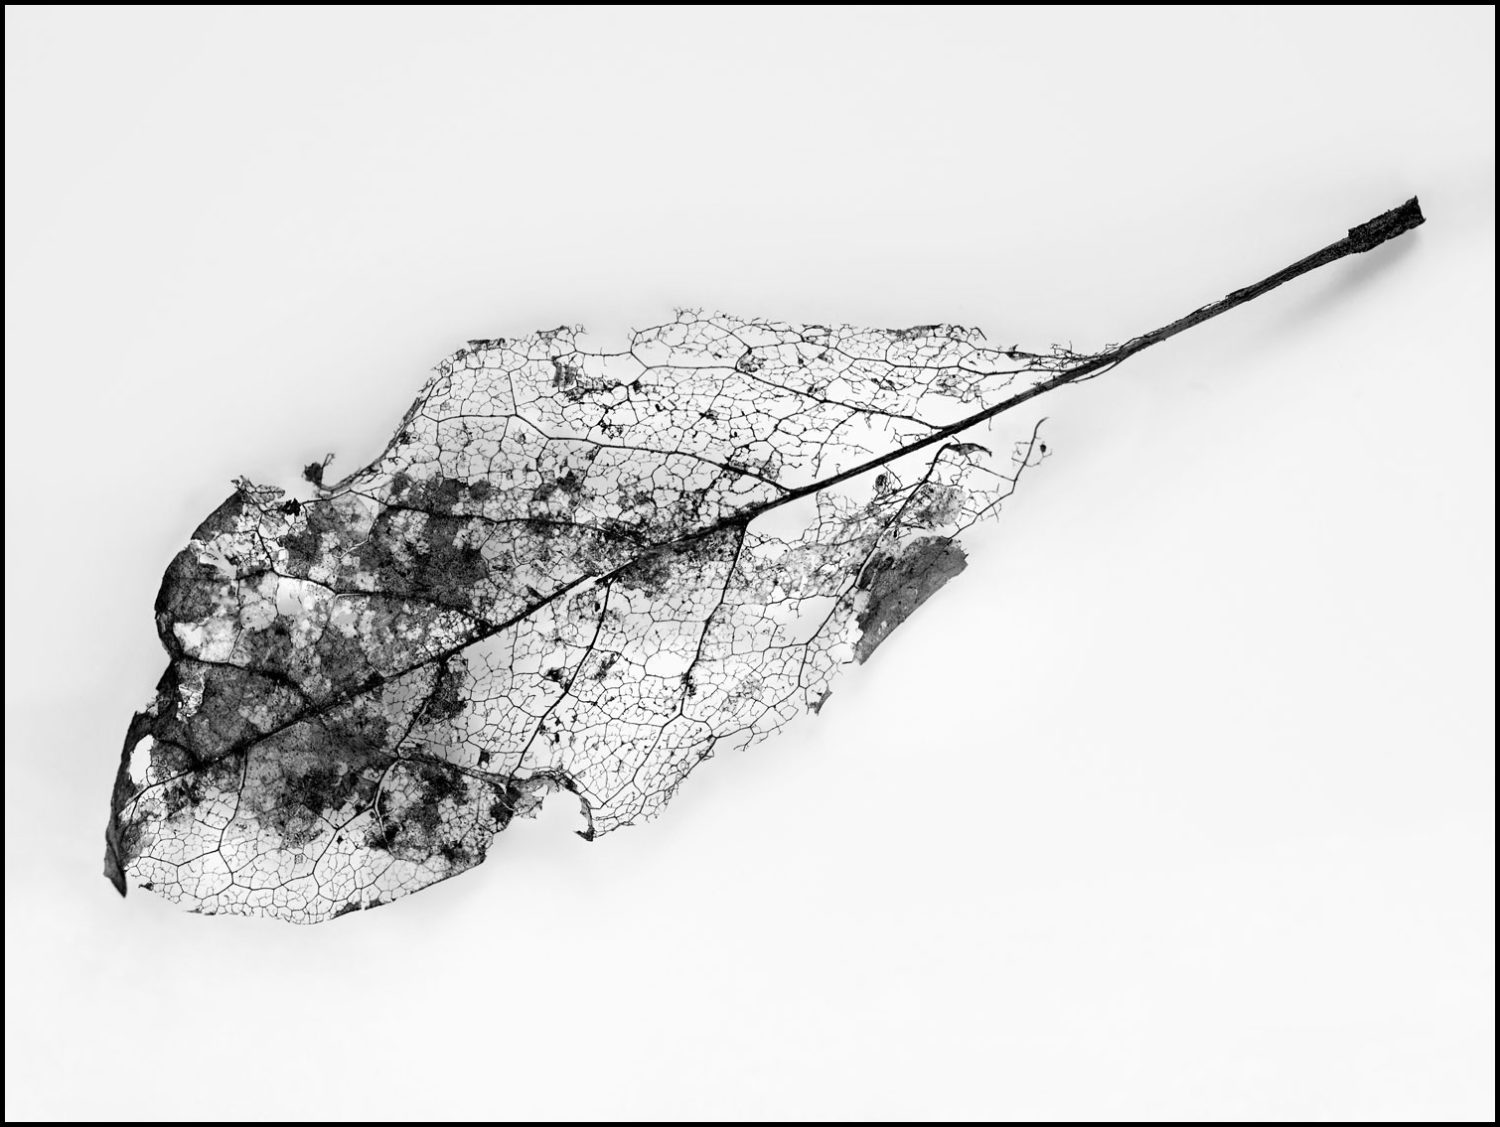 Schwarz-Weiß-Fotografie: Pflanzenblattgerippe auf weißem Grund